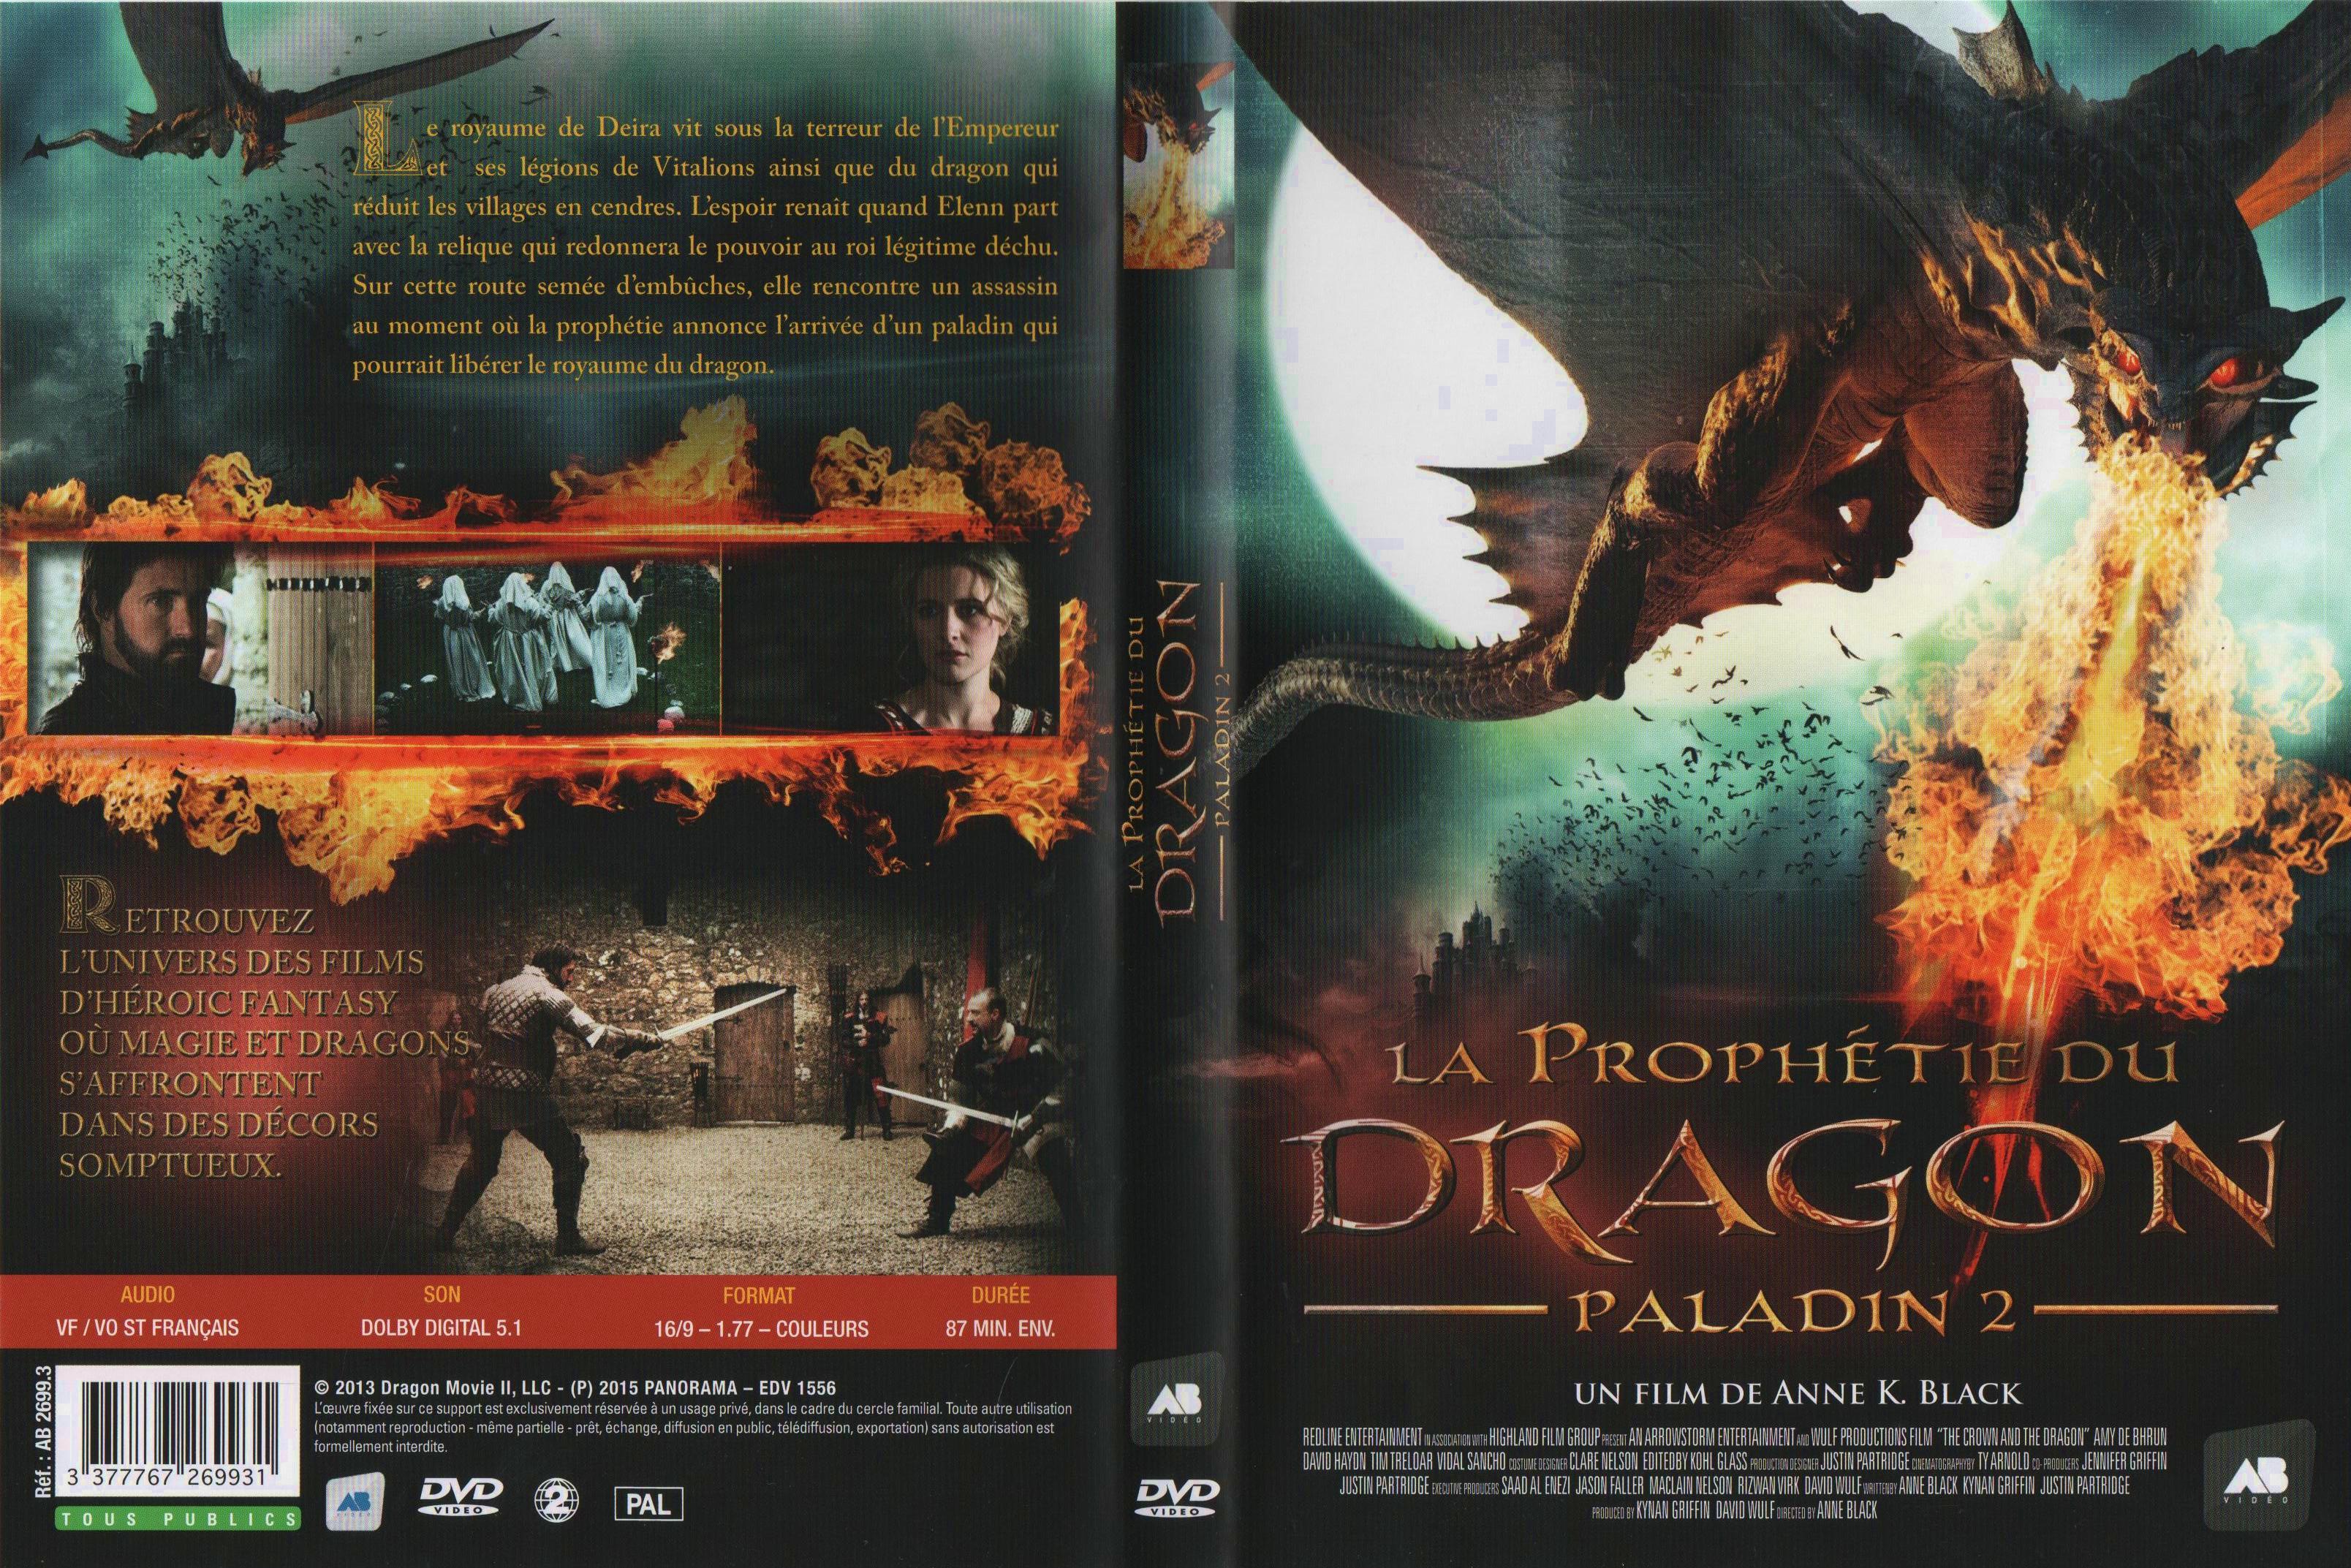 Jaquette DVD La prophetie du dragon paladin 2